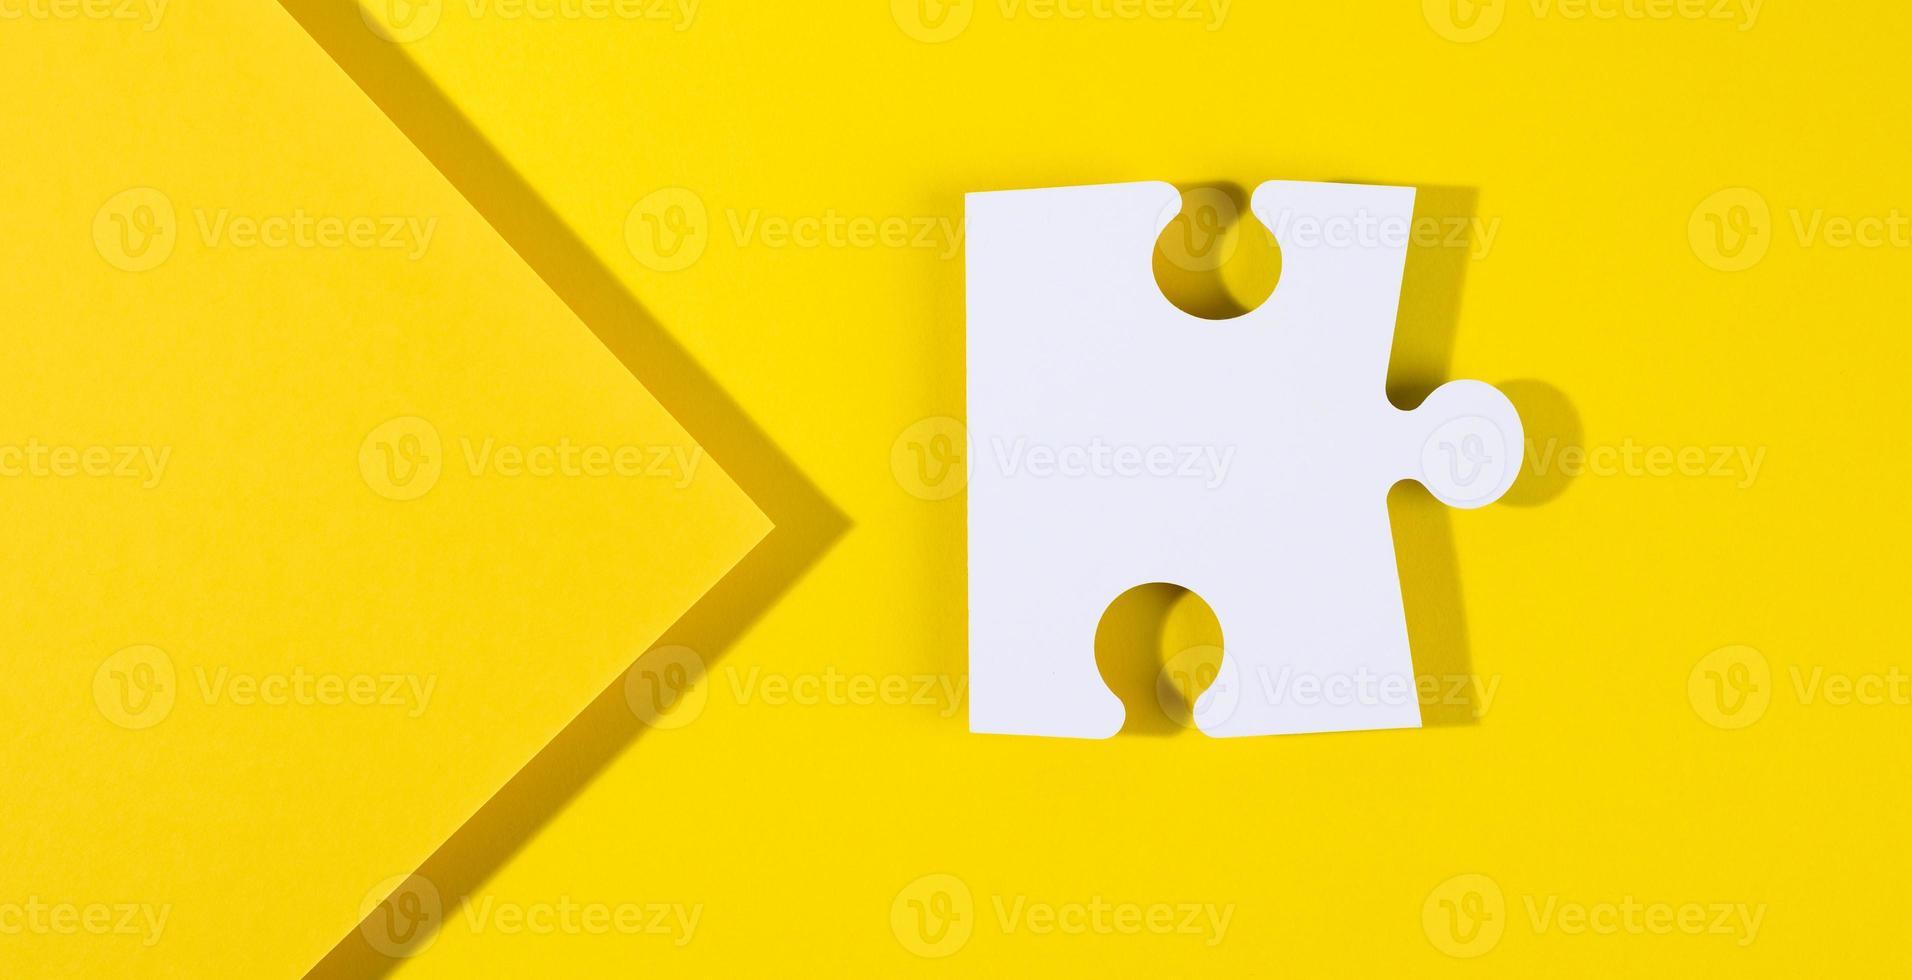 gran rompecabezas de papel blanco en blanco con sombra sobre fondo amarillo, vista superior foto